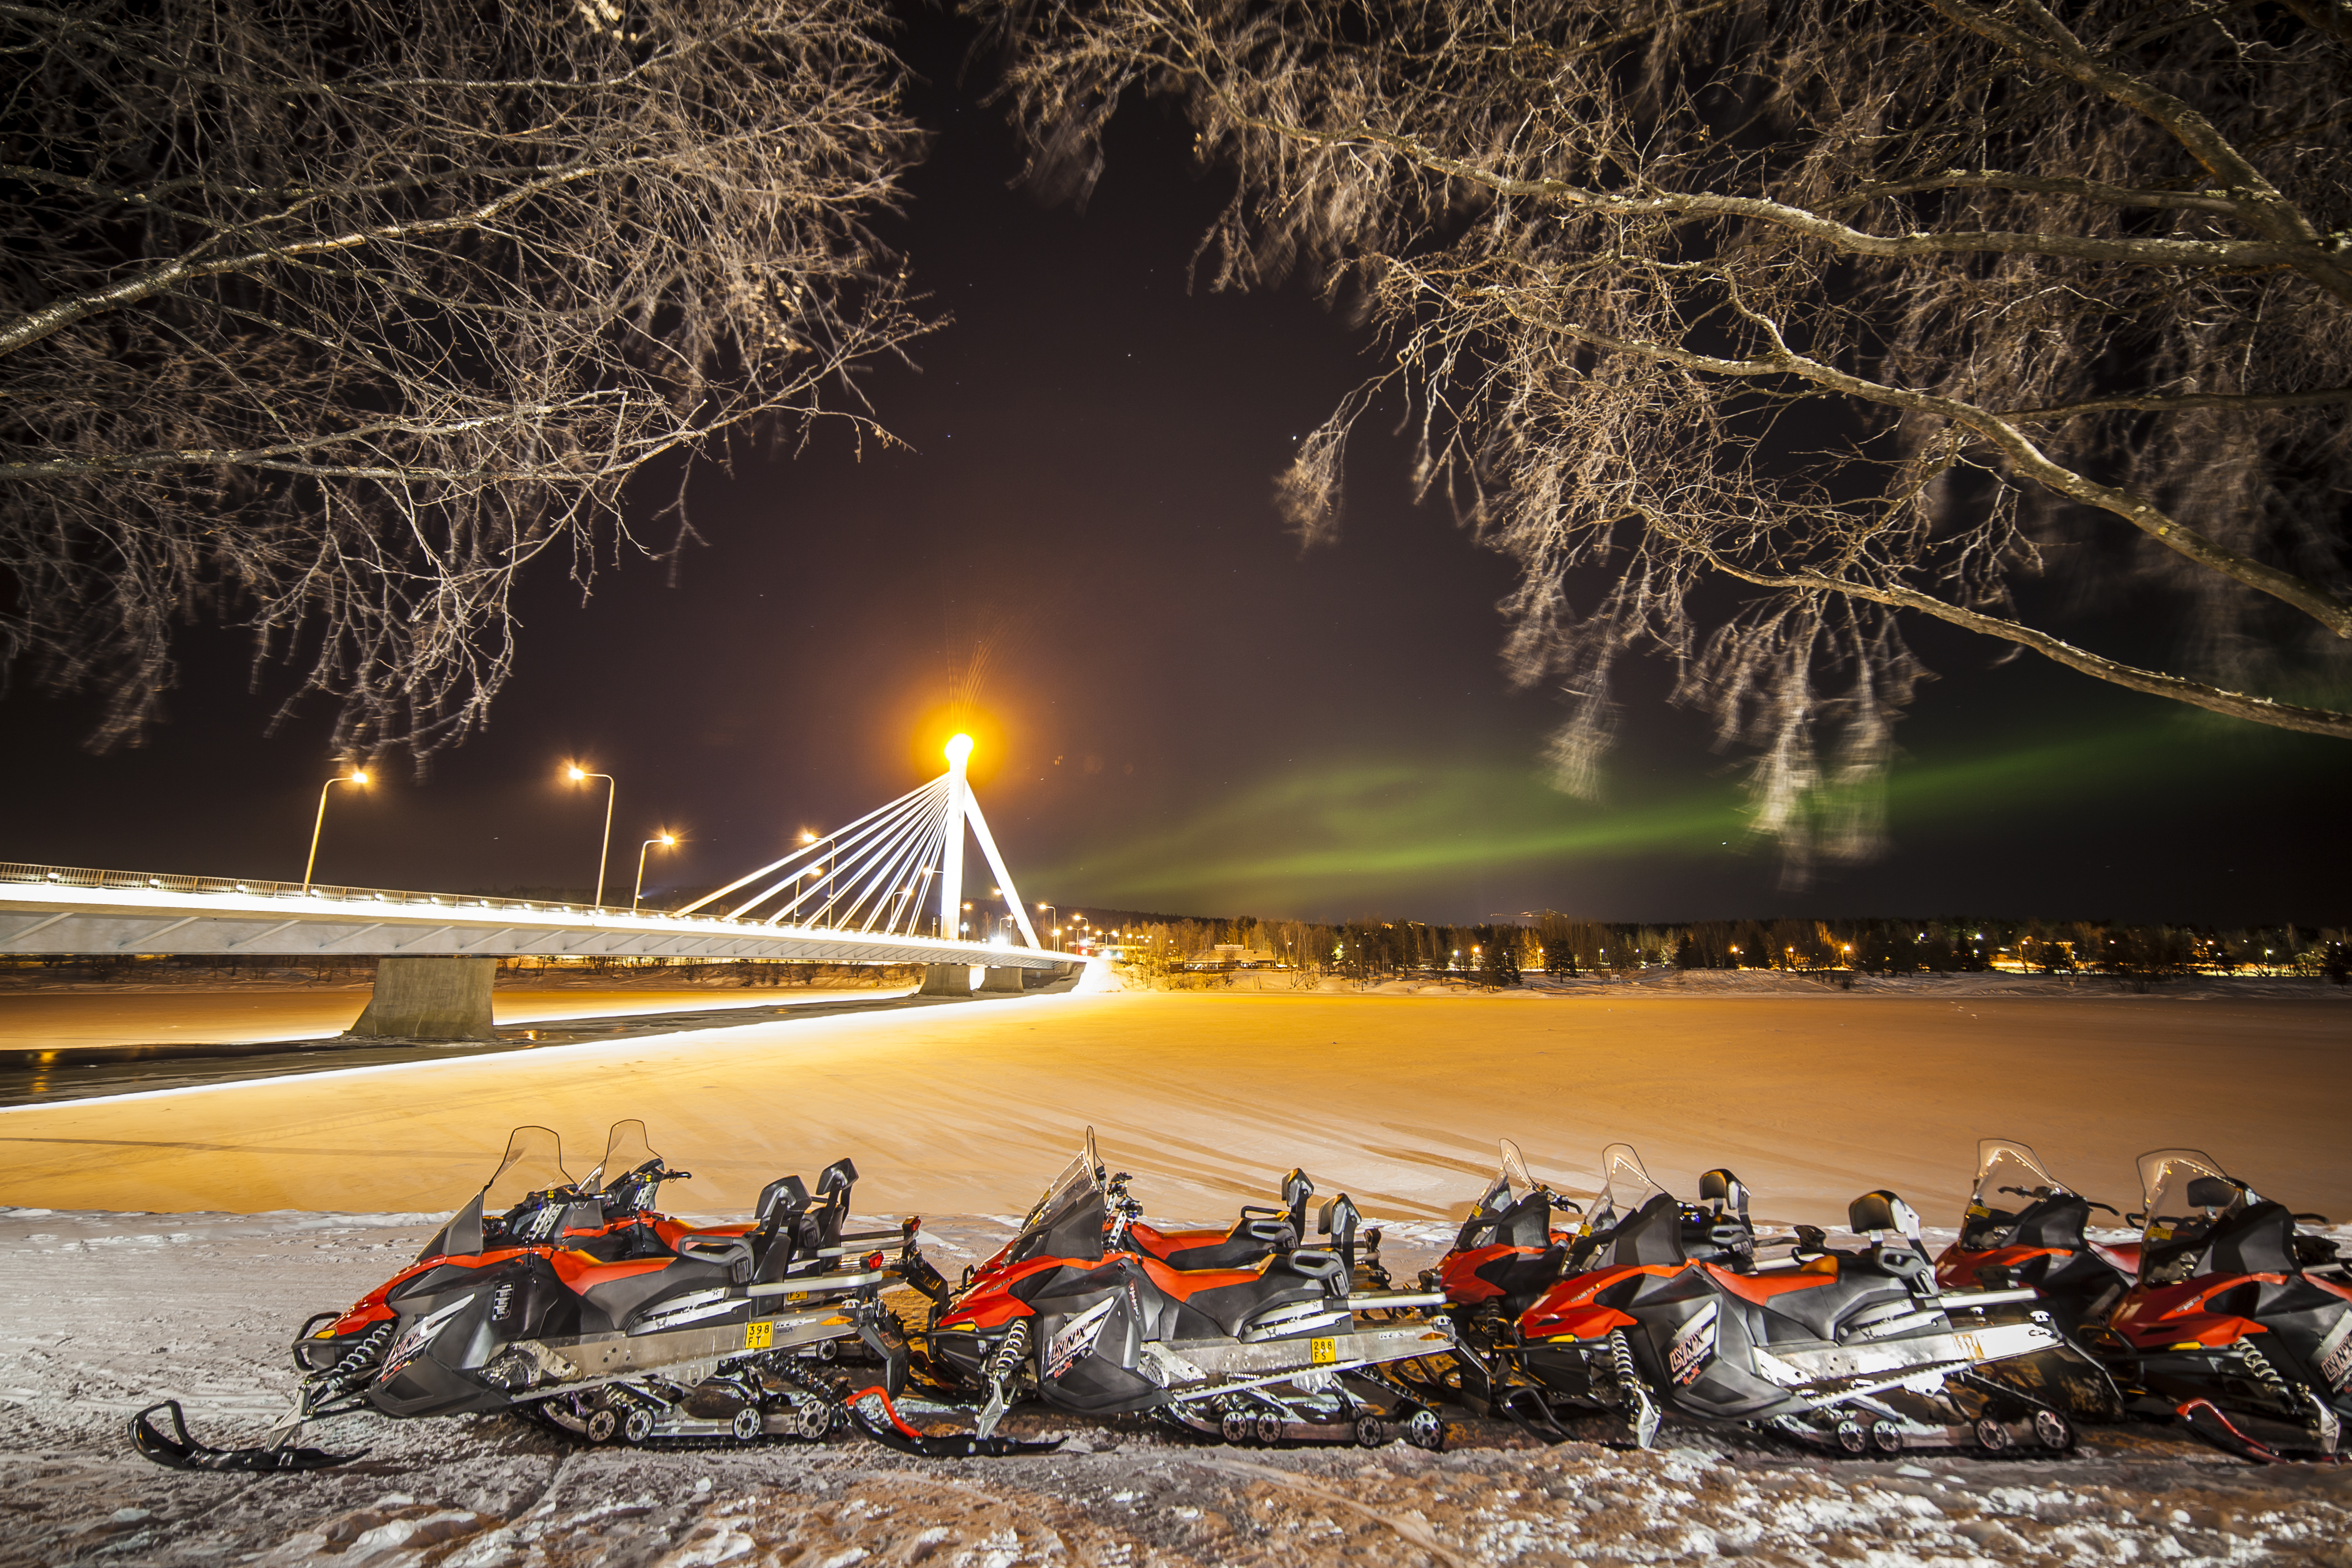 Northern Lights Rovaniemi 